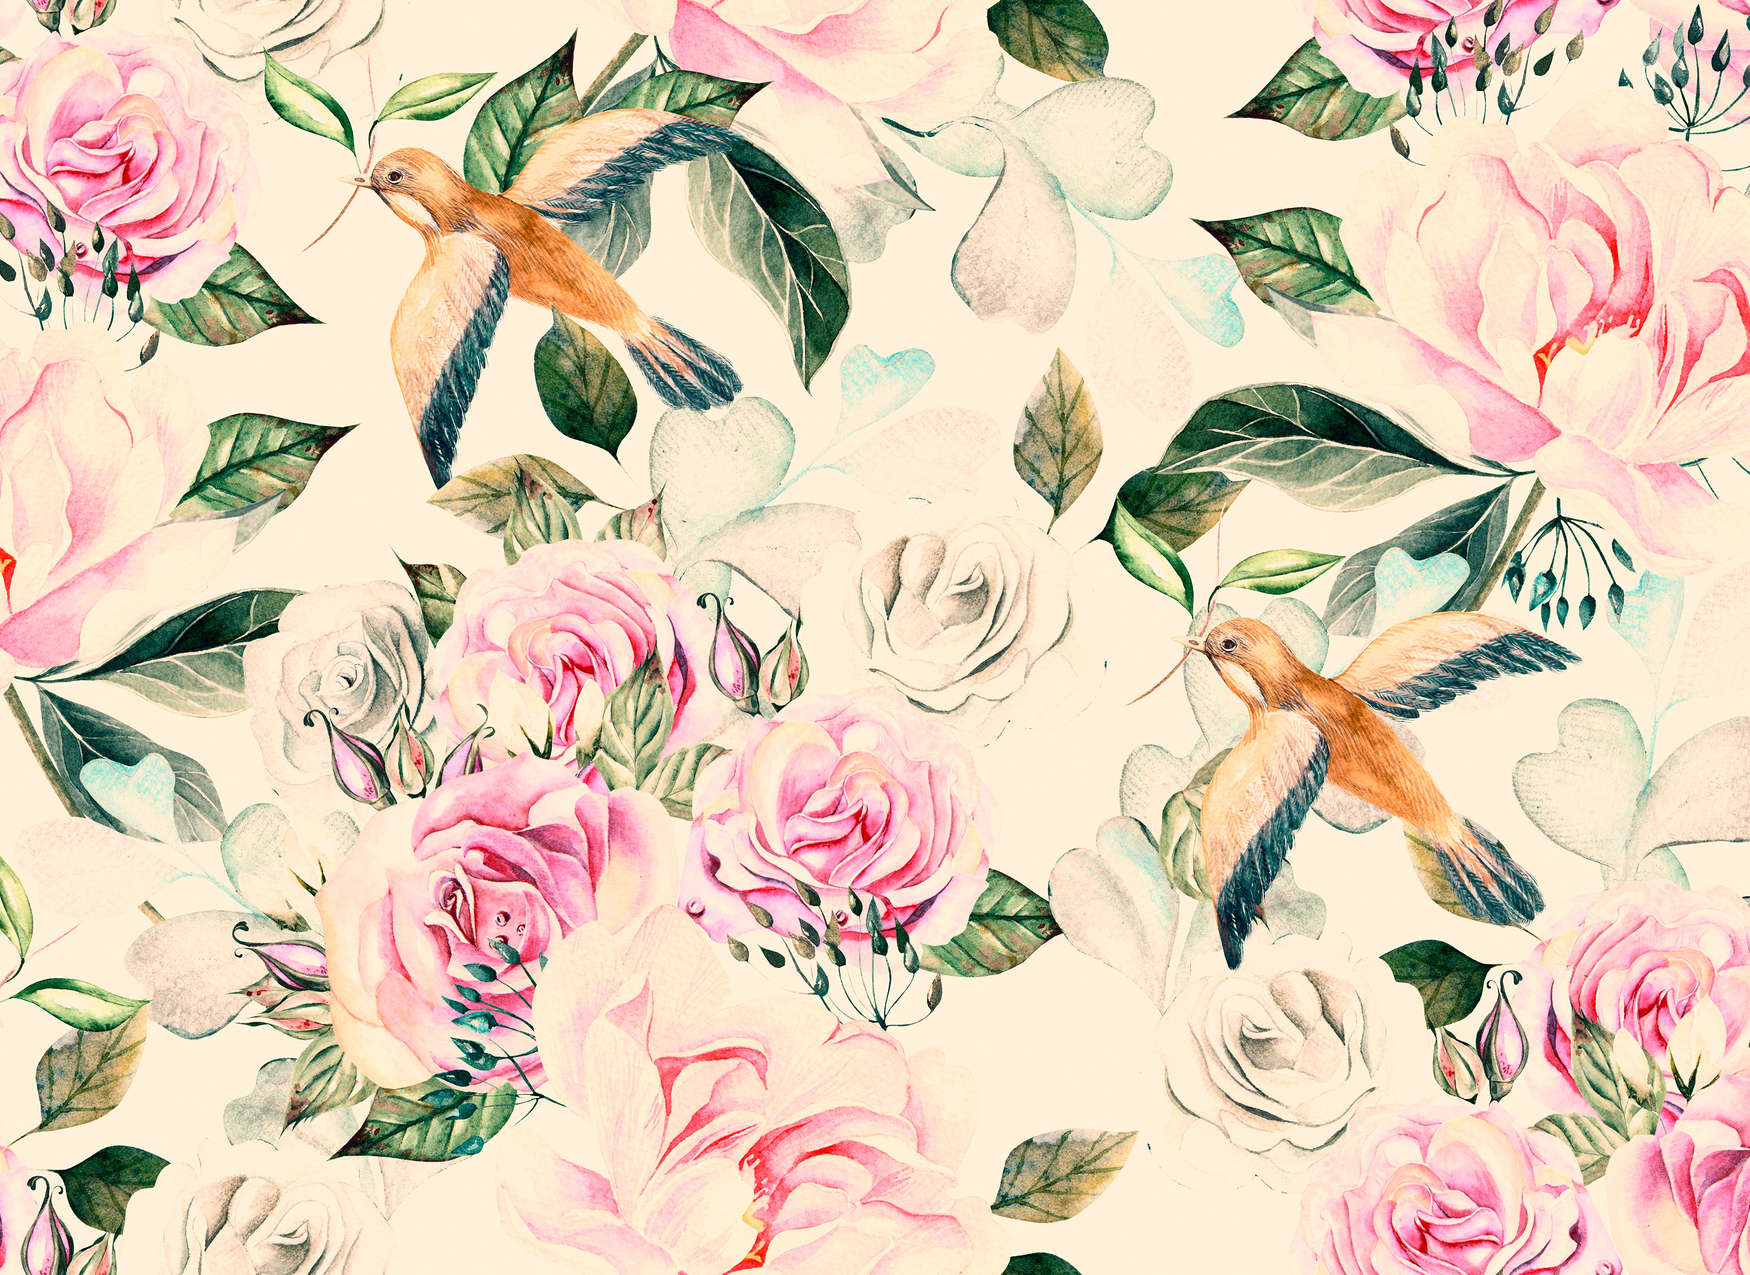             Fiori e uccelli giocosi in stile vintage - Crema, rosa, verde
        